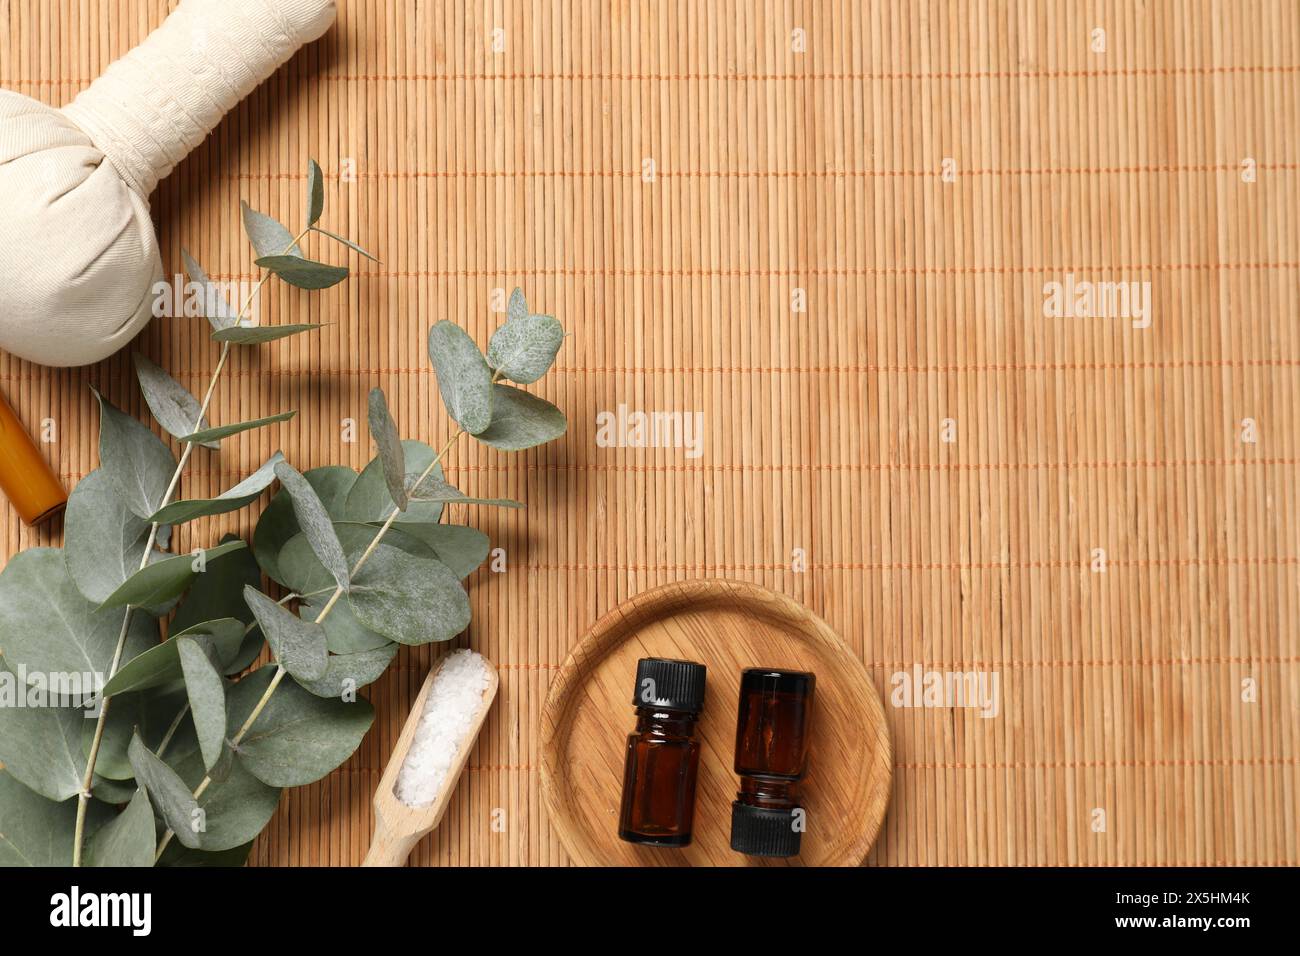 Verschiedene Aromatherapieprodukte und Eukalyptuszweige auf Bambusmatte, flach gelegt. Leerzeichen für Text Stockfoto